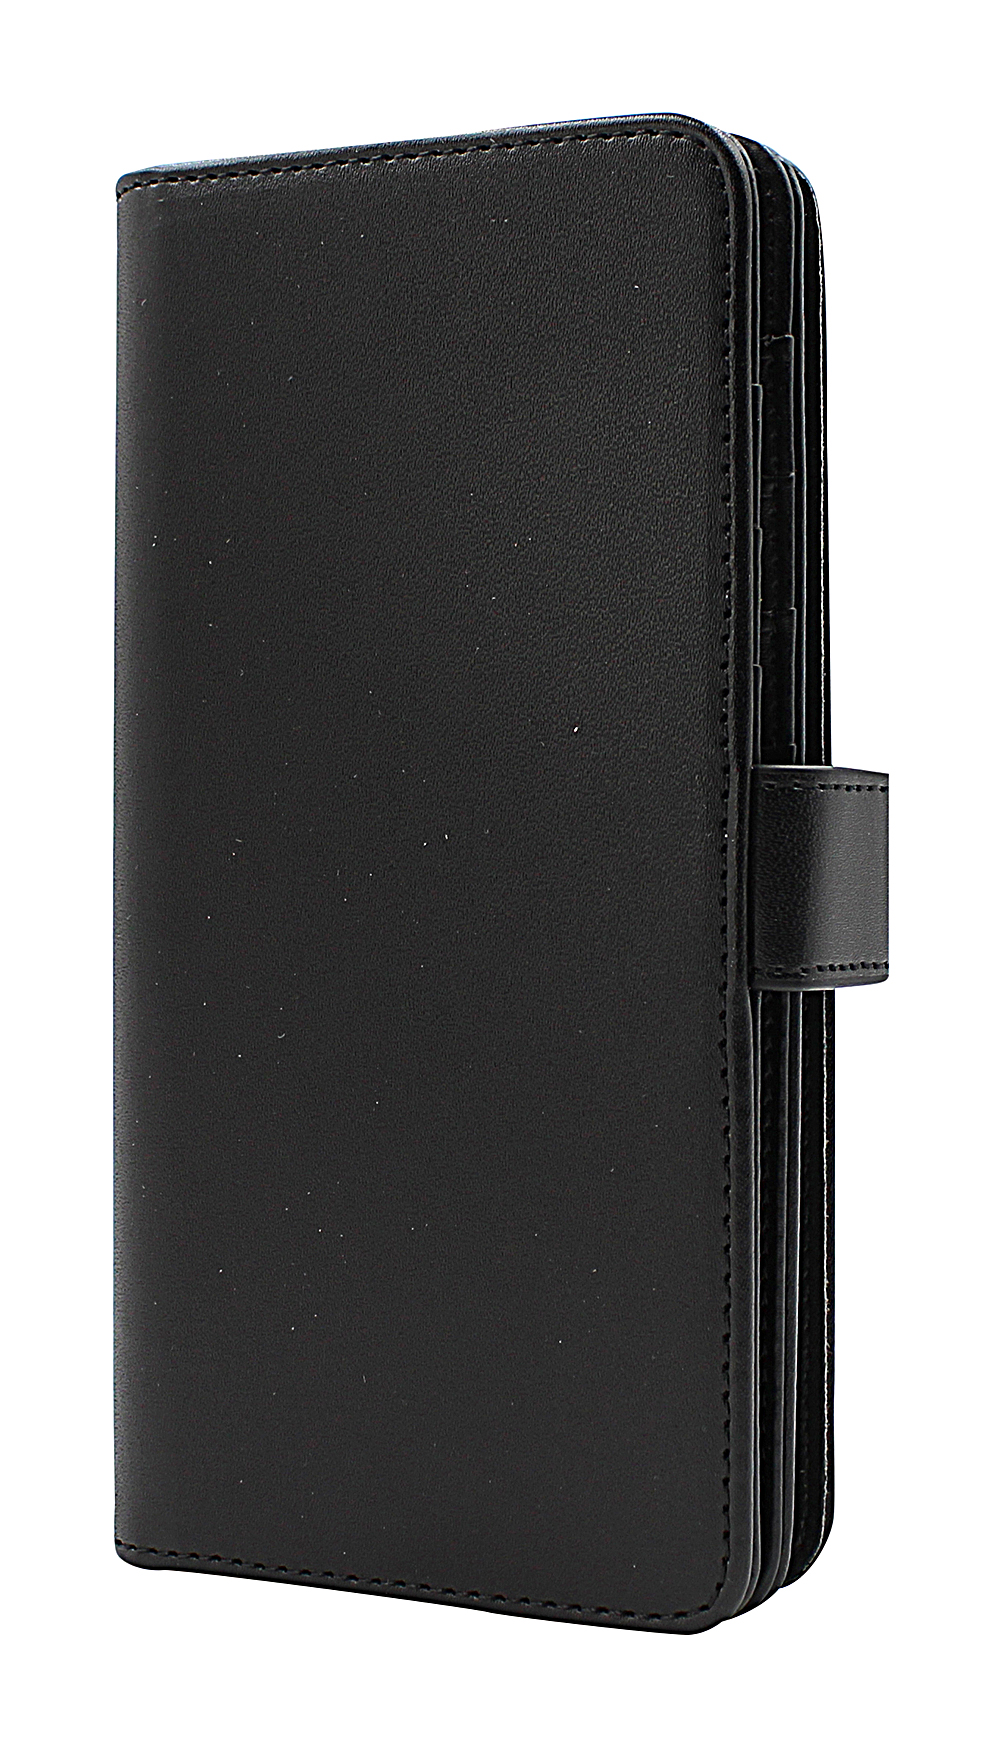 Skimblocker XL Wallet Samsung Galaxy A51 5G (A516B/DS)